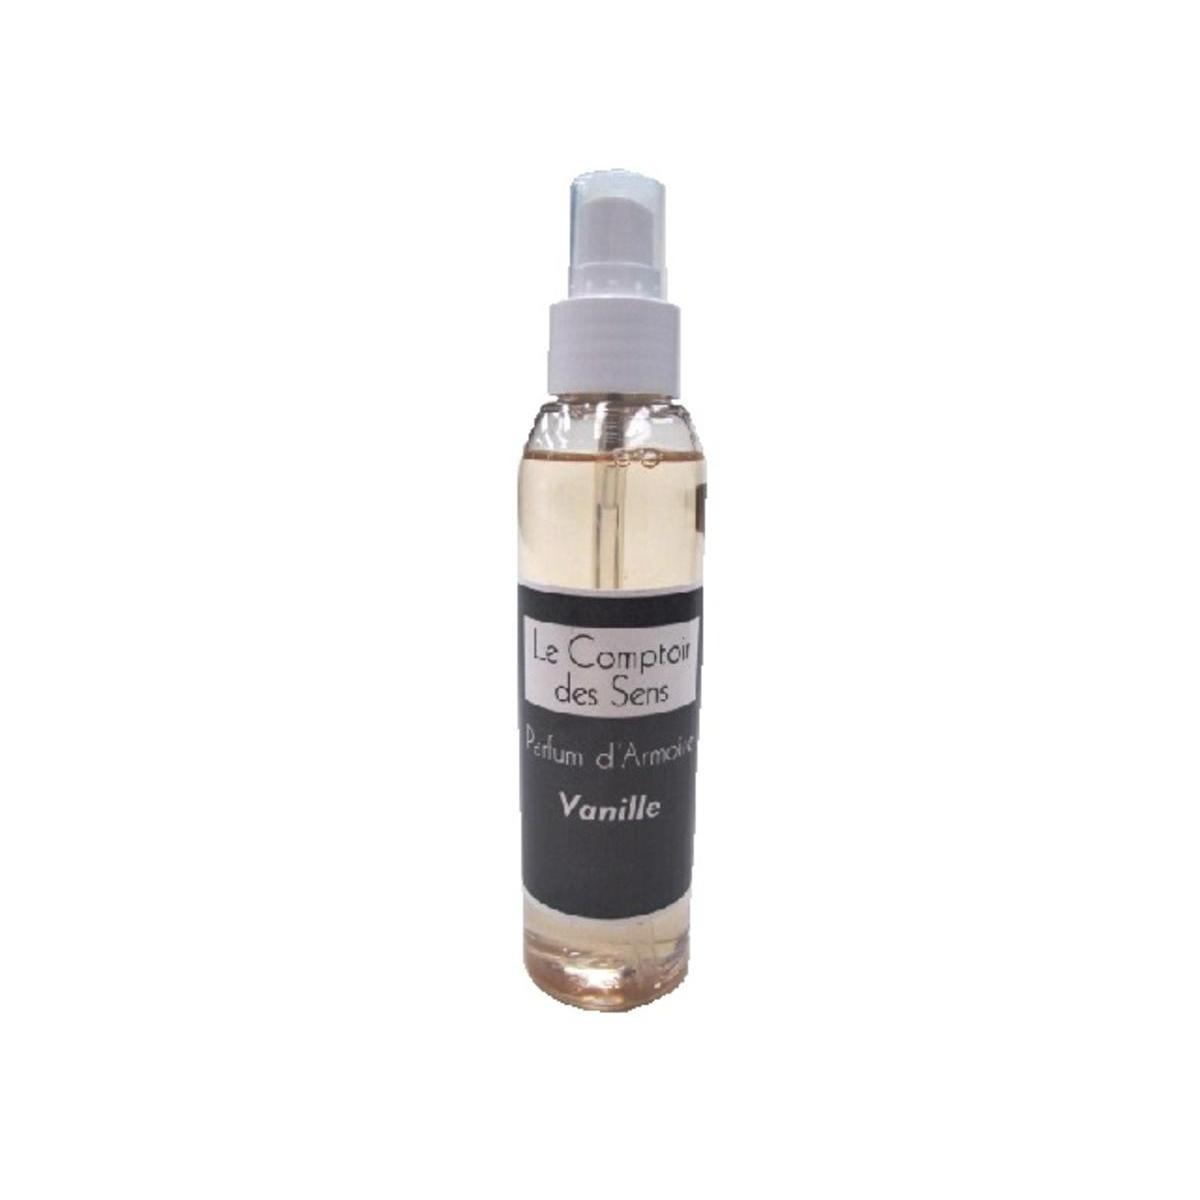 Spray-parfum pour armoire - 125 ml - Senteur vanille - LE COMPTOIR DES SENS